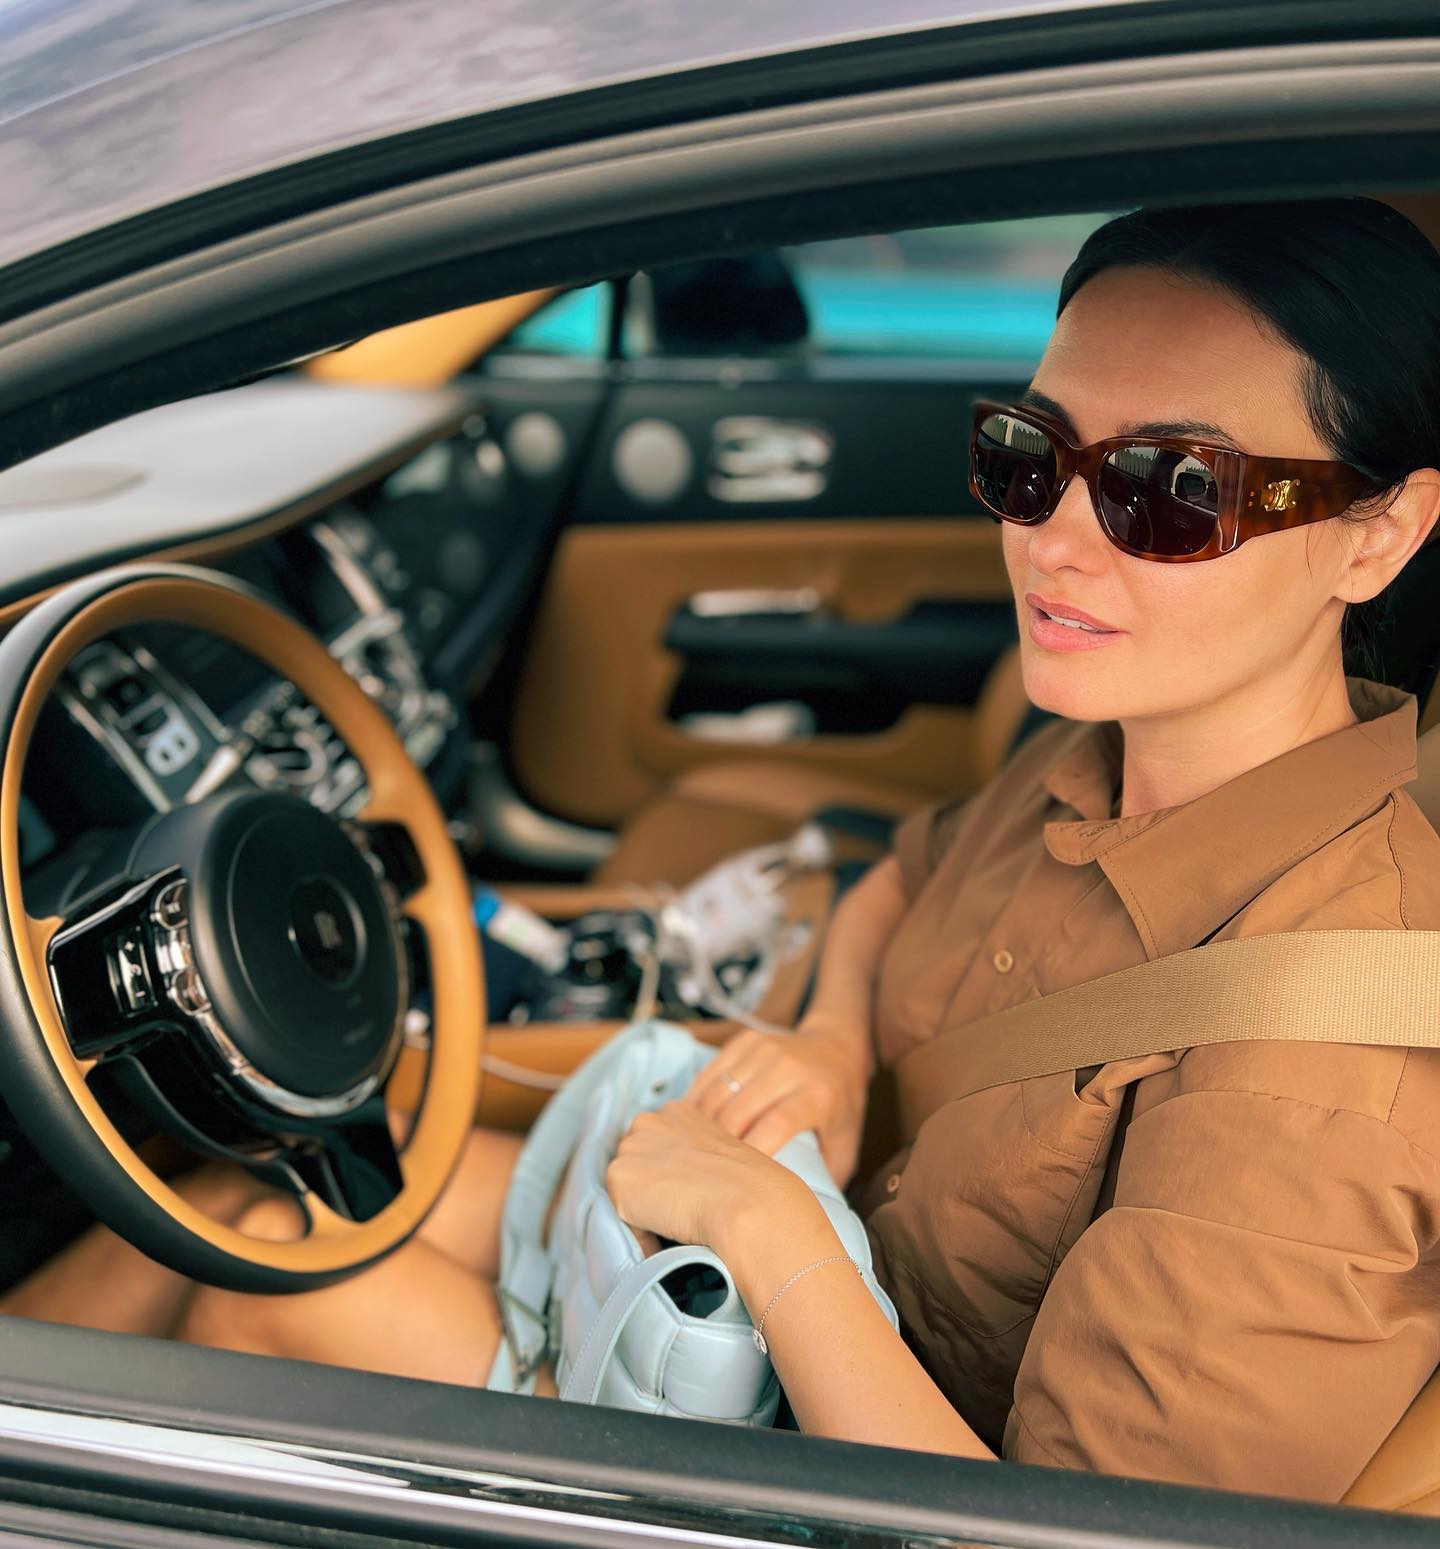 Автоледи: знаменитые девушки, которые отлично смотрятся за рулём и не только